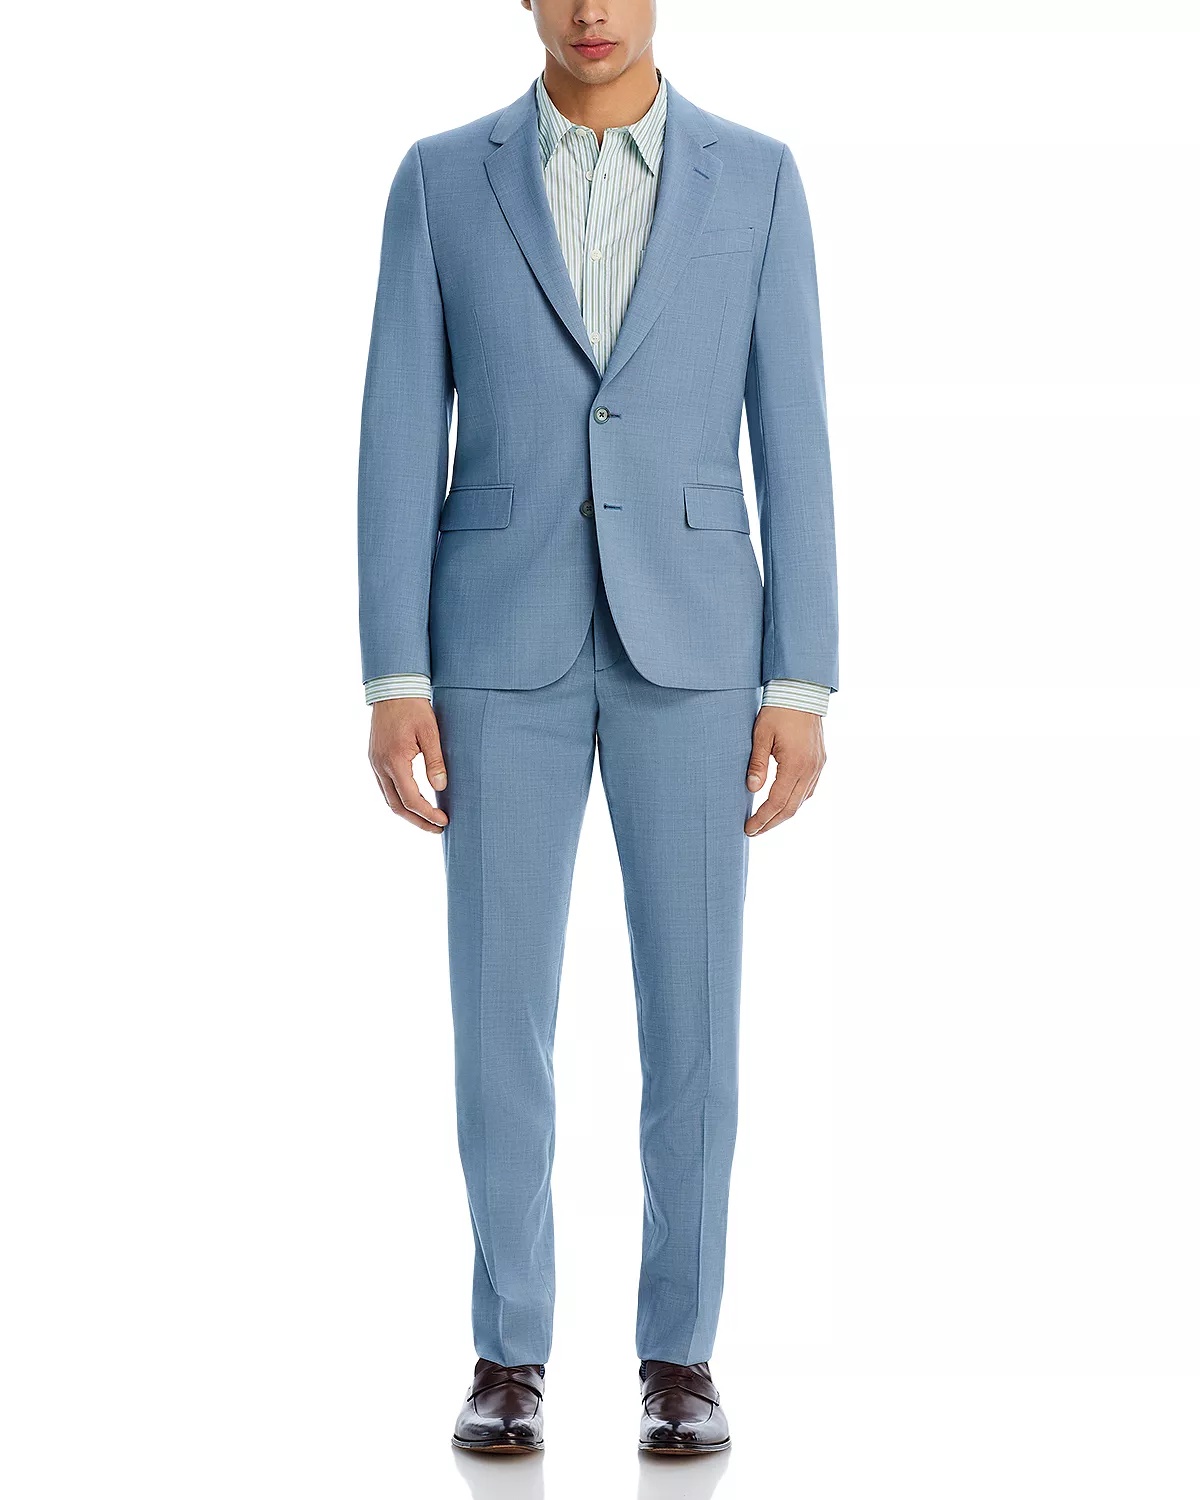 Soho Melange Solid Extra Slim Fit Suit - 3